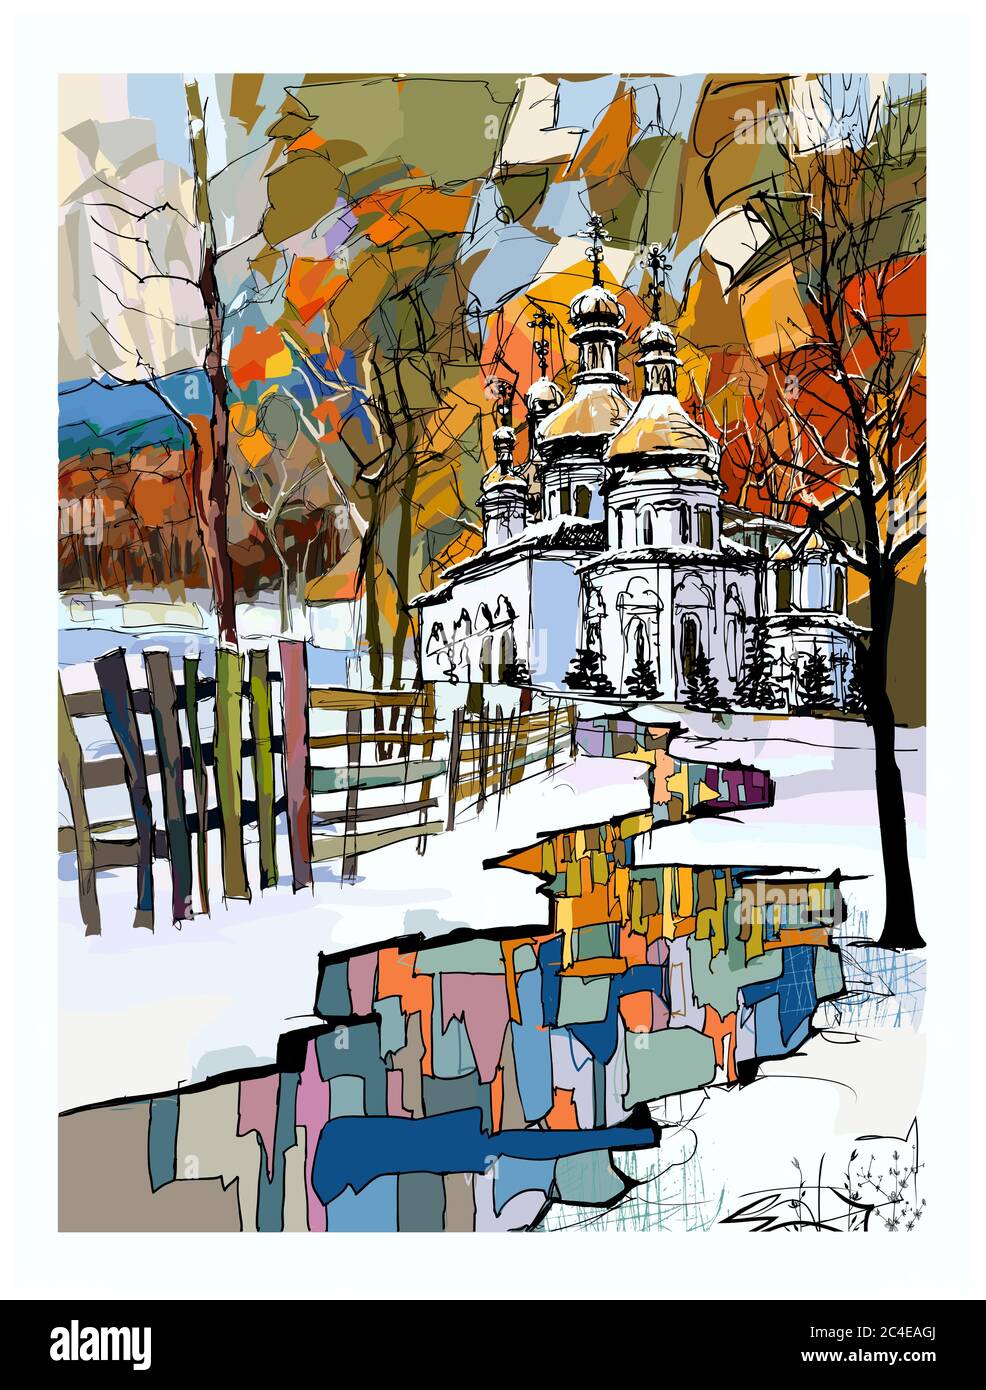 Russische orthodoxe Kirche in einer verschneiten Winterlandschaft - Vektor-Illustration (ideal für den Druck auf Stoff oder Papier, Poster oder Tapete, Hausdekoration Stock Vektor